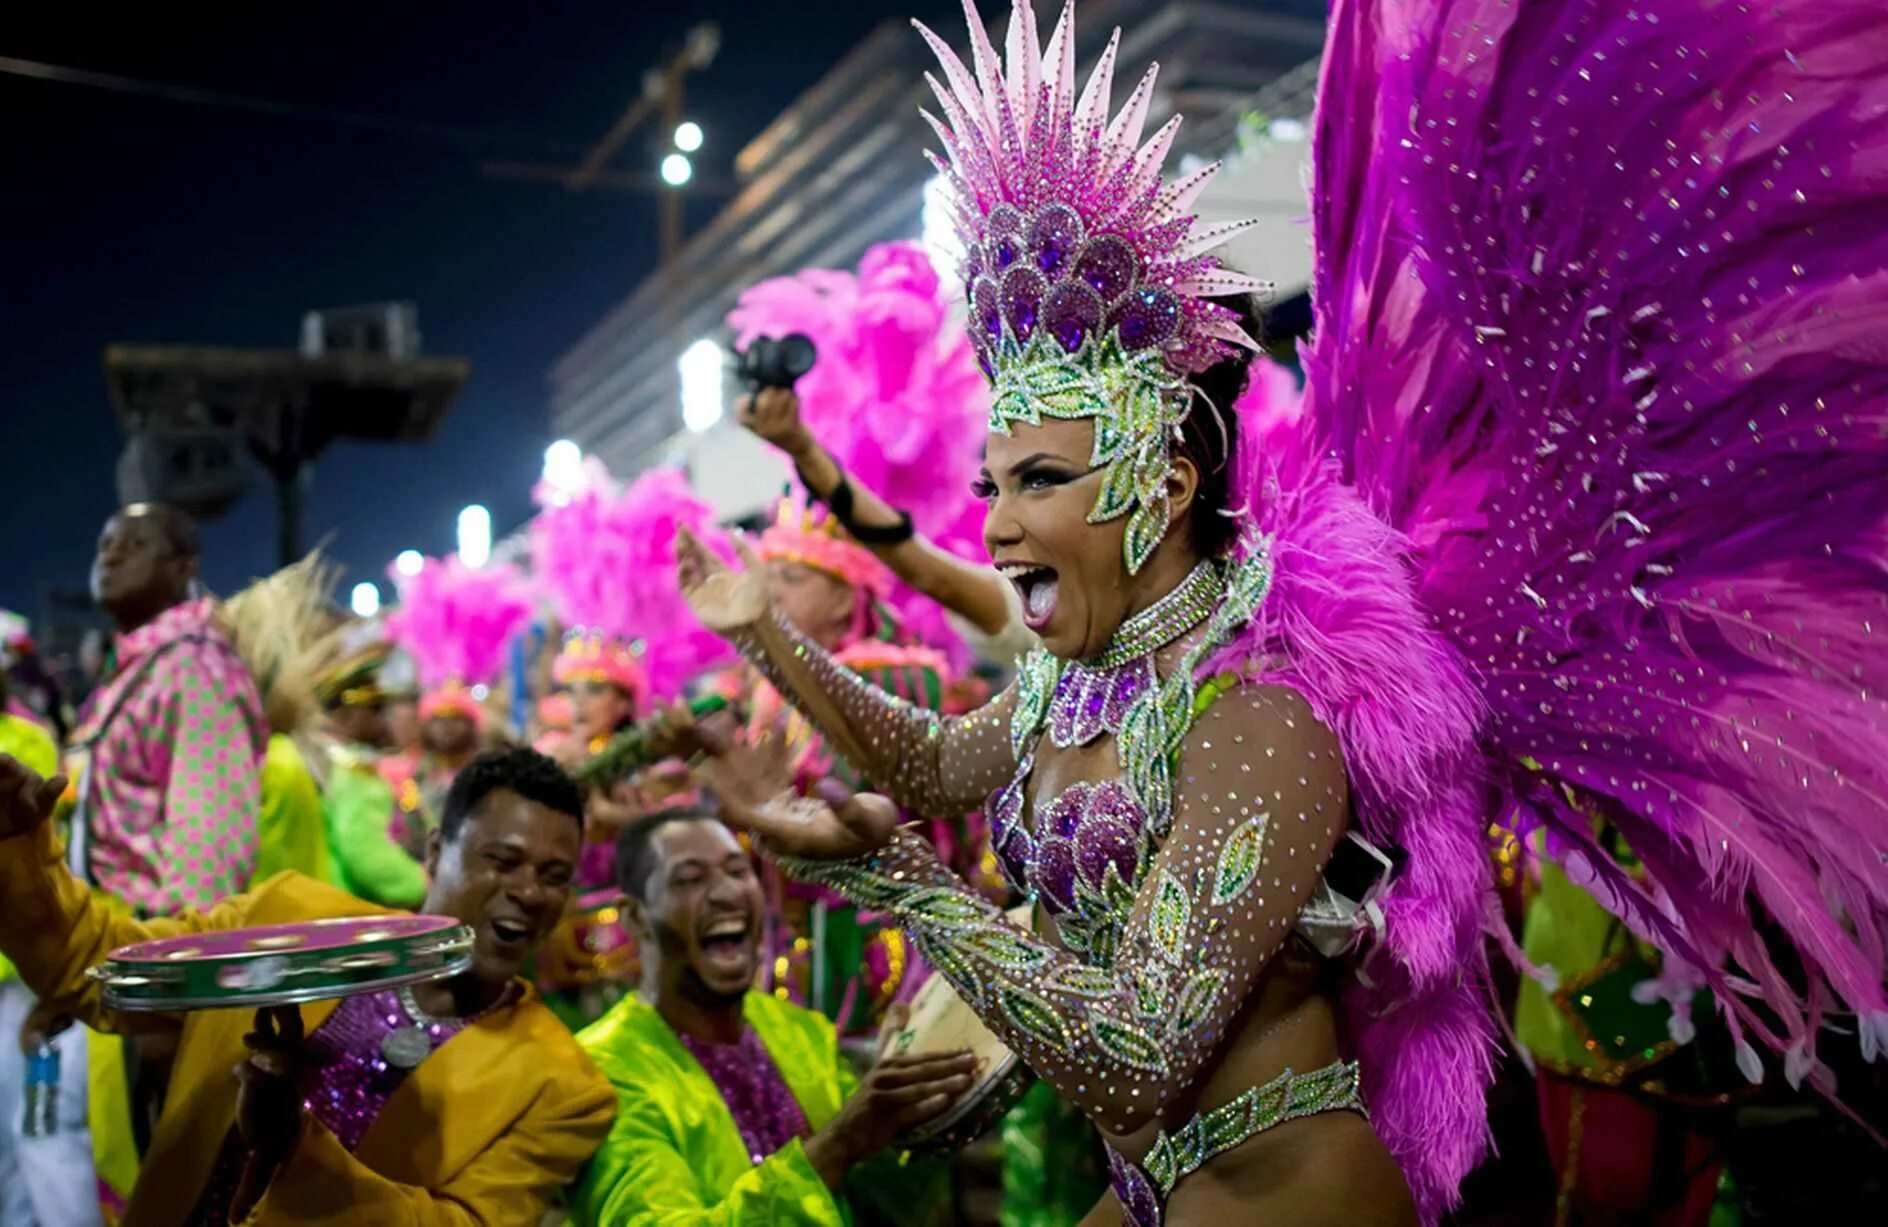 Все о бразилии. Карнавал в Рио-де-Жанейро. Карнавал в Бразилии. Рио де Жанейро карнавал 2014. Карнавал Рио де Жанейро танцы.